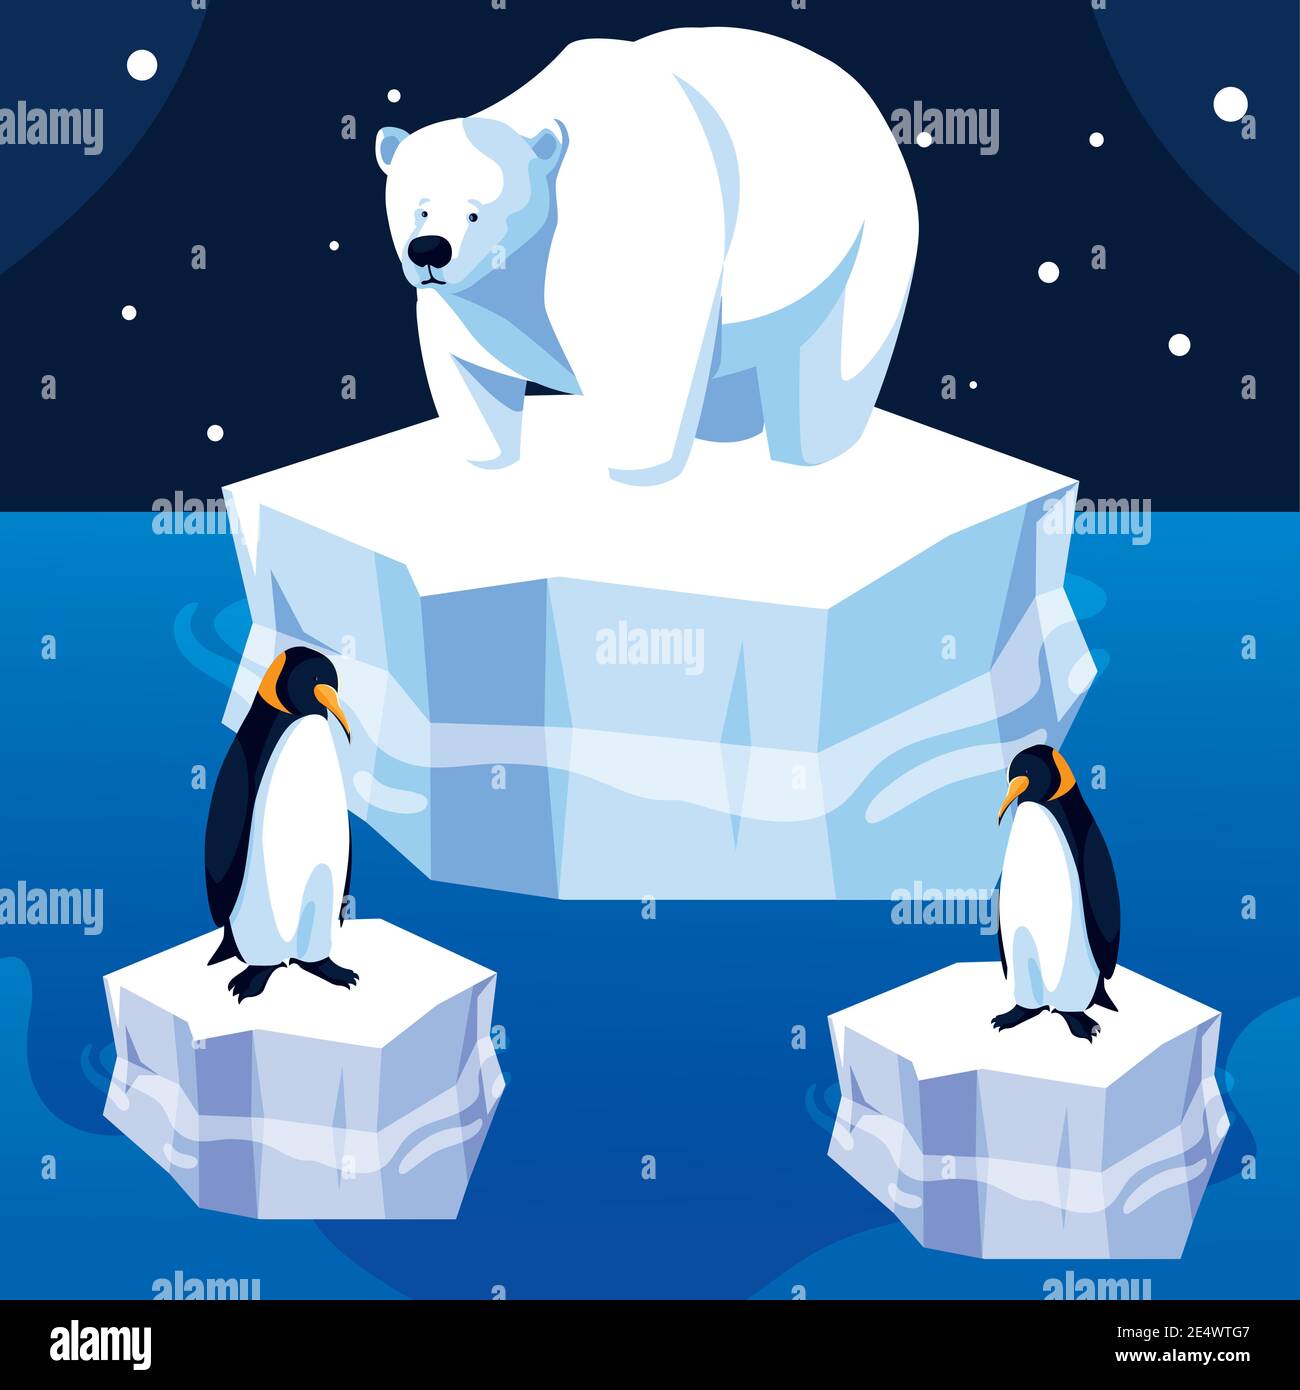 orso polare e pinguini iceberg polo nord vettore di paesaggio notte  illustrazione Immagine e Vettoriale - Alamy